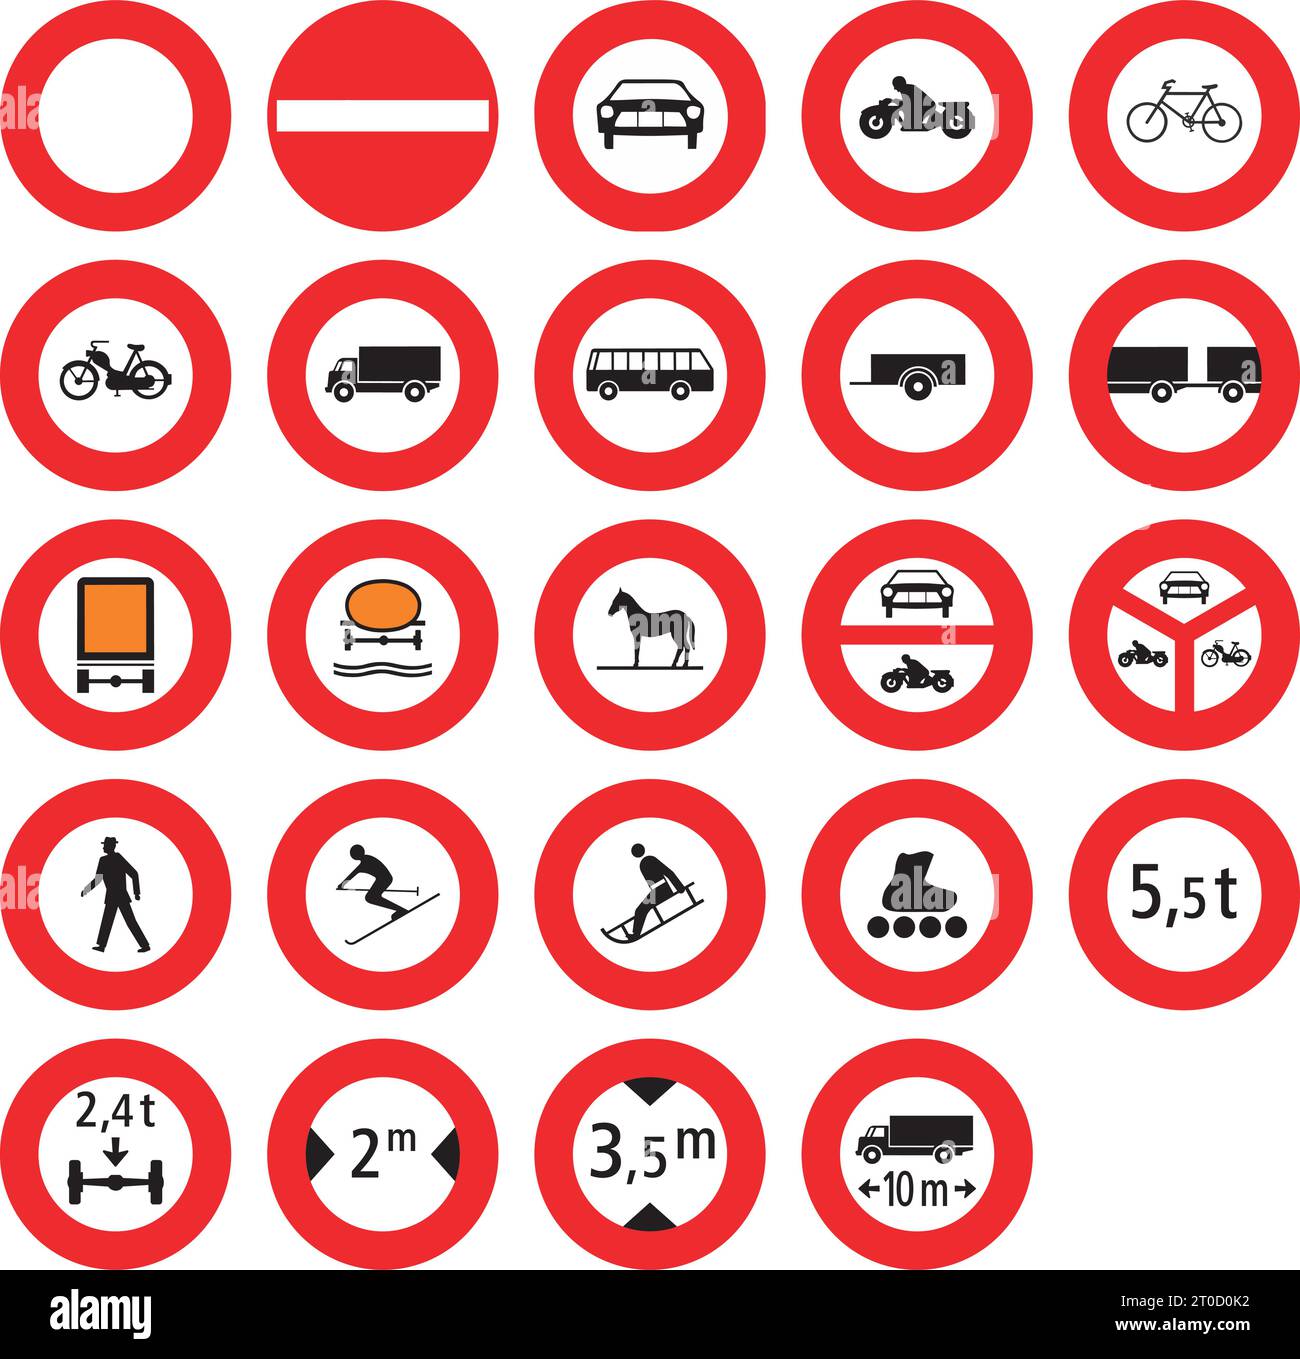 Divieti, segnali normativi, segnaletica stradale in Svizzera e Liechtenstein Illustrazione Vettoriale